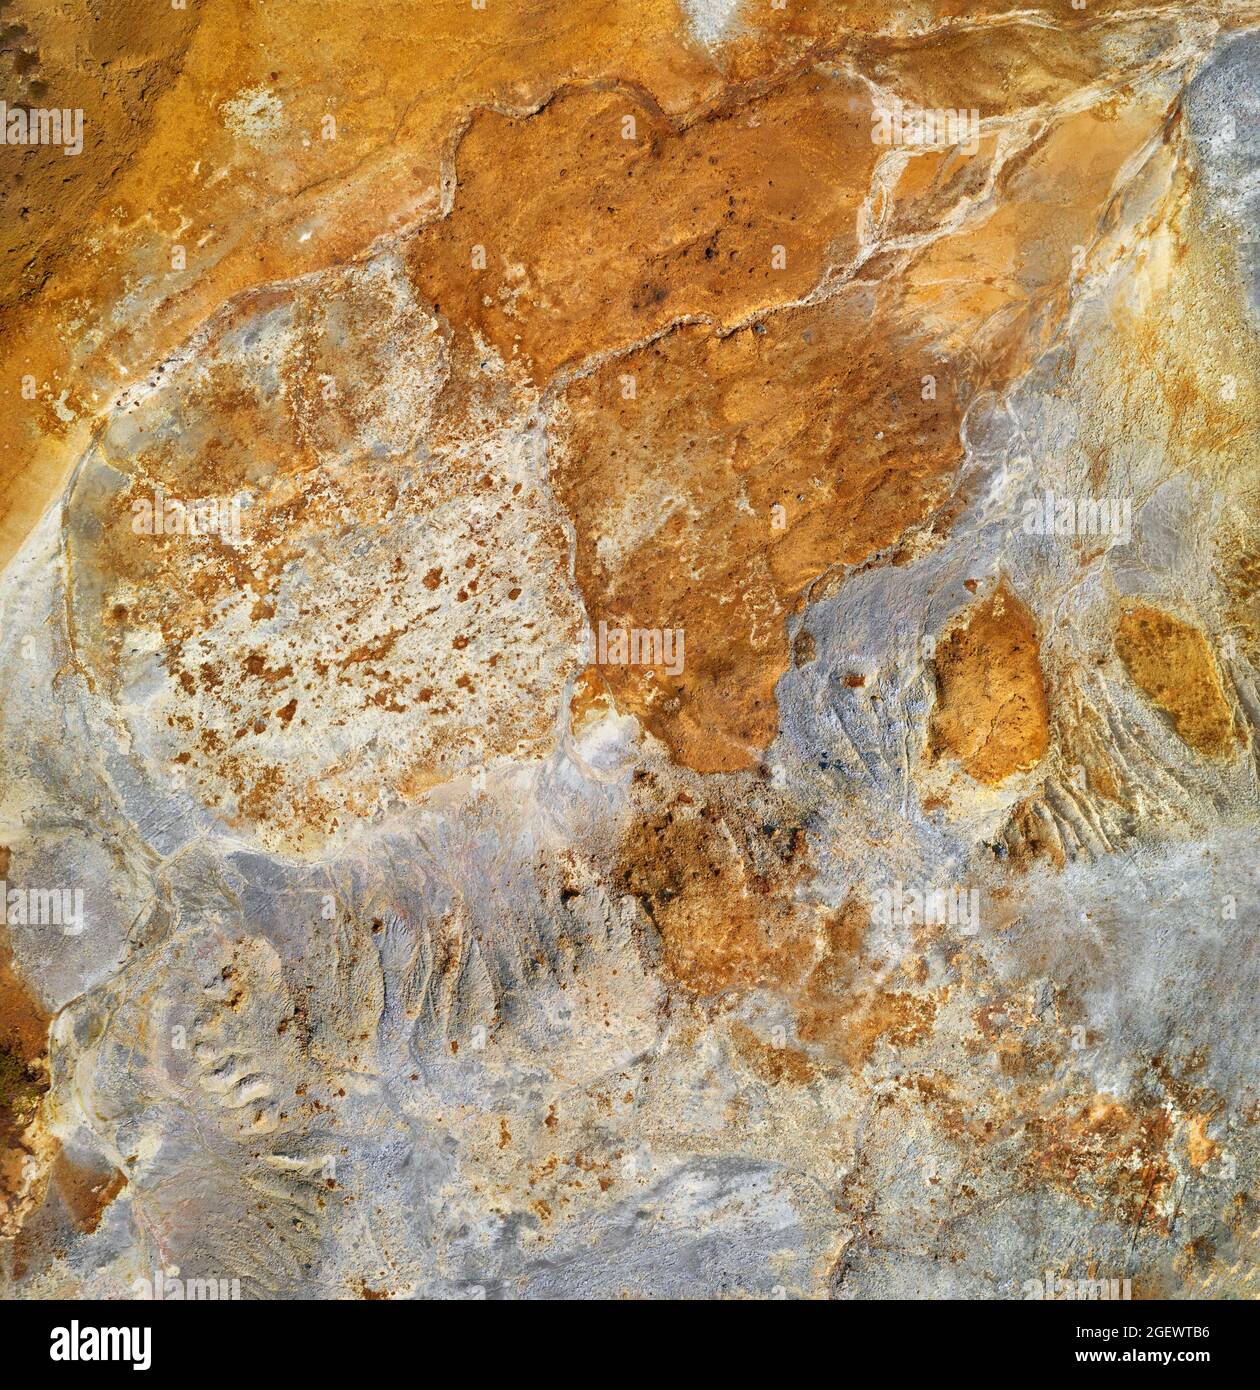 Arrière-plan minier abstrait, couleurs orange et gris des résidus miniers de cuivre et des tas de déblais Banque D'Images